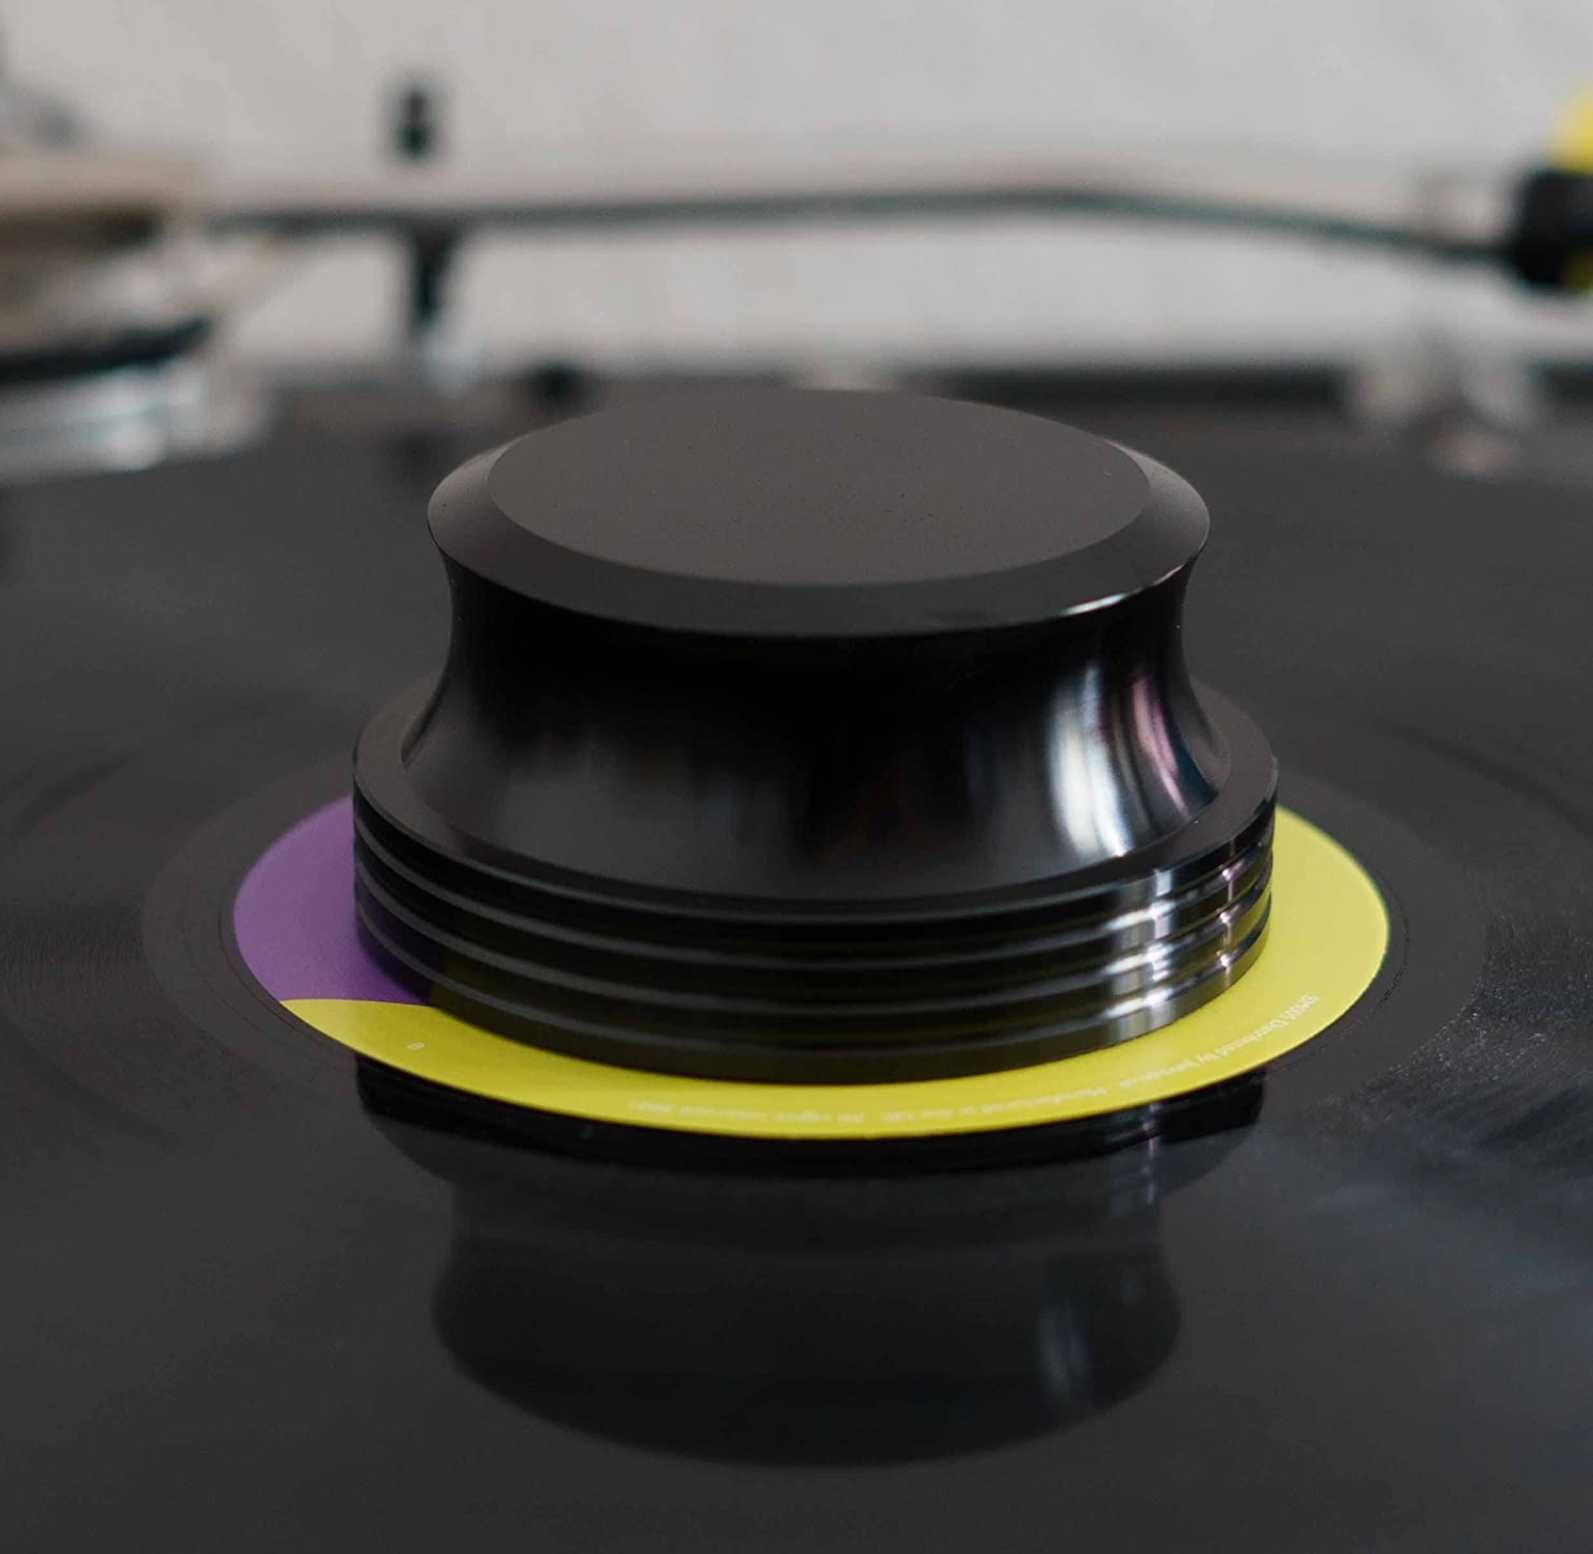 Тежест за грамофонни плочи - Висококачествен стабилизатор черен, 422g